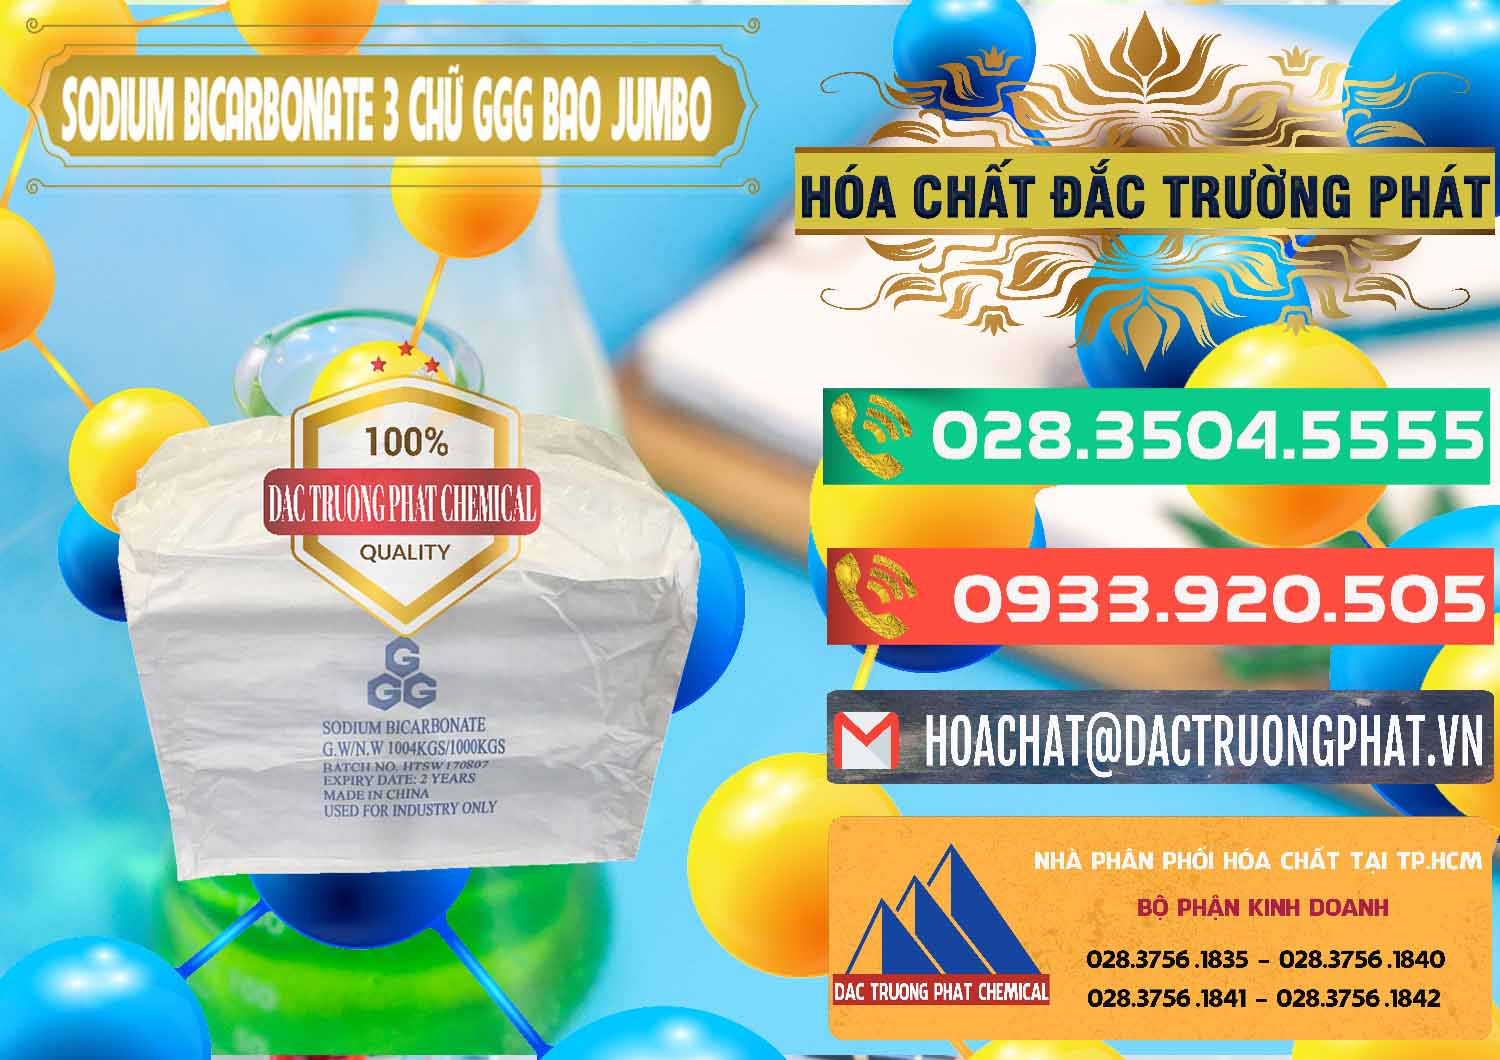 Cty chuyên cung cấp và bán Sodium Bicarbonate – Bicar NaHCO3 Food Grade 3 Chữ GGG Bao Jumbo ( Bành ) Trung Quốc China - 0260 - Cty cung cấp _ nhập khẩu hóa chất tại TP.HCM - congtyhoachat.com.vn